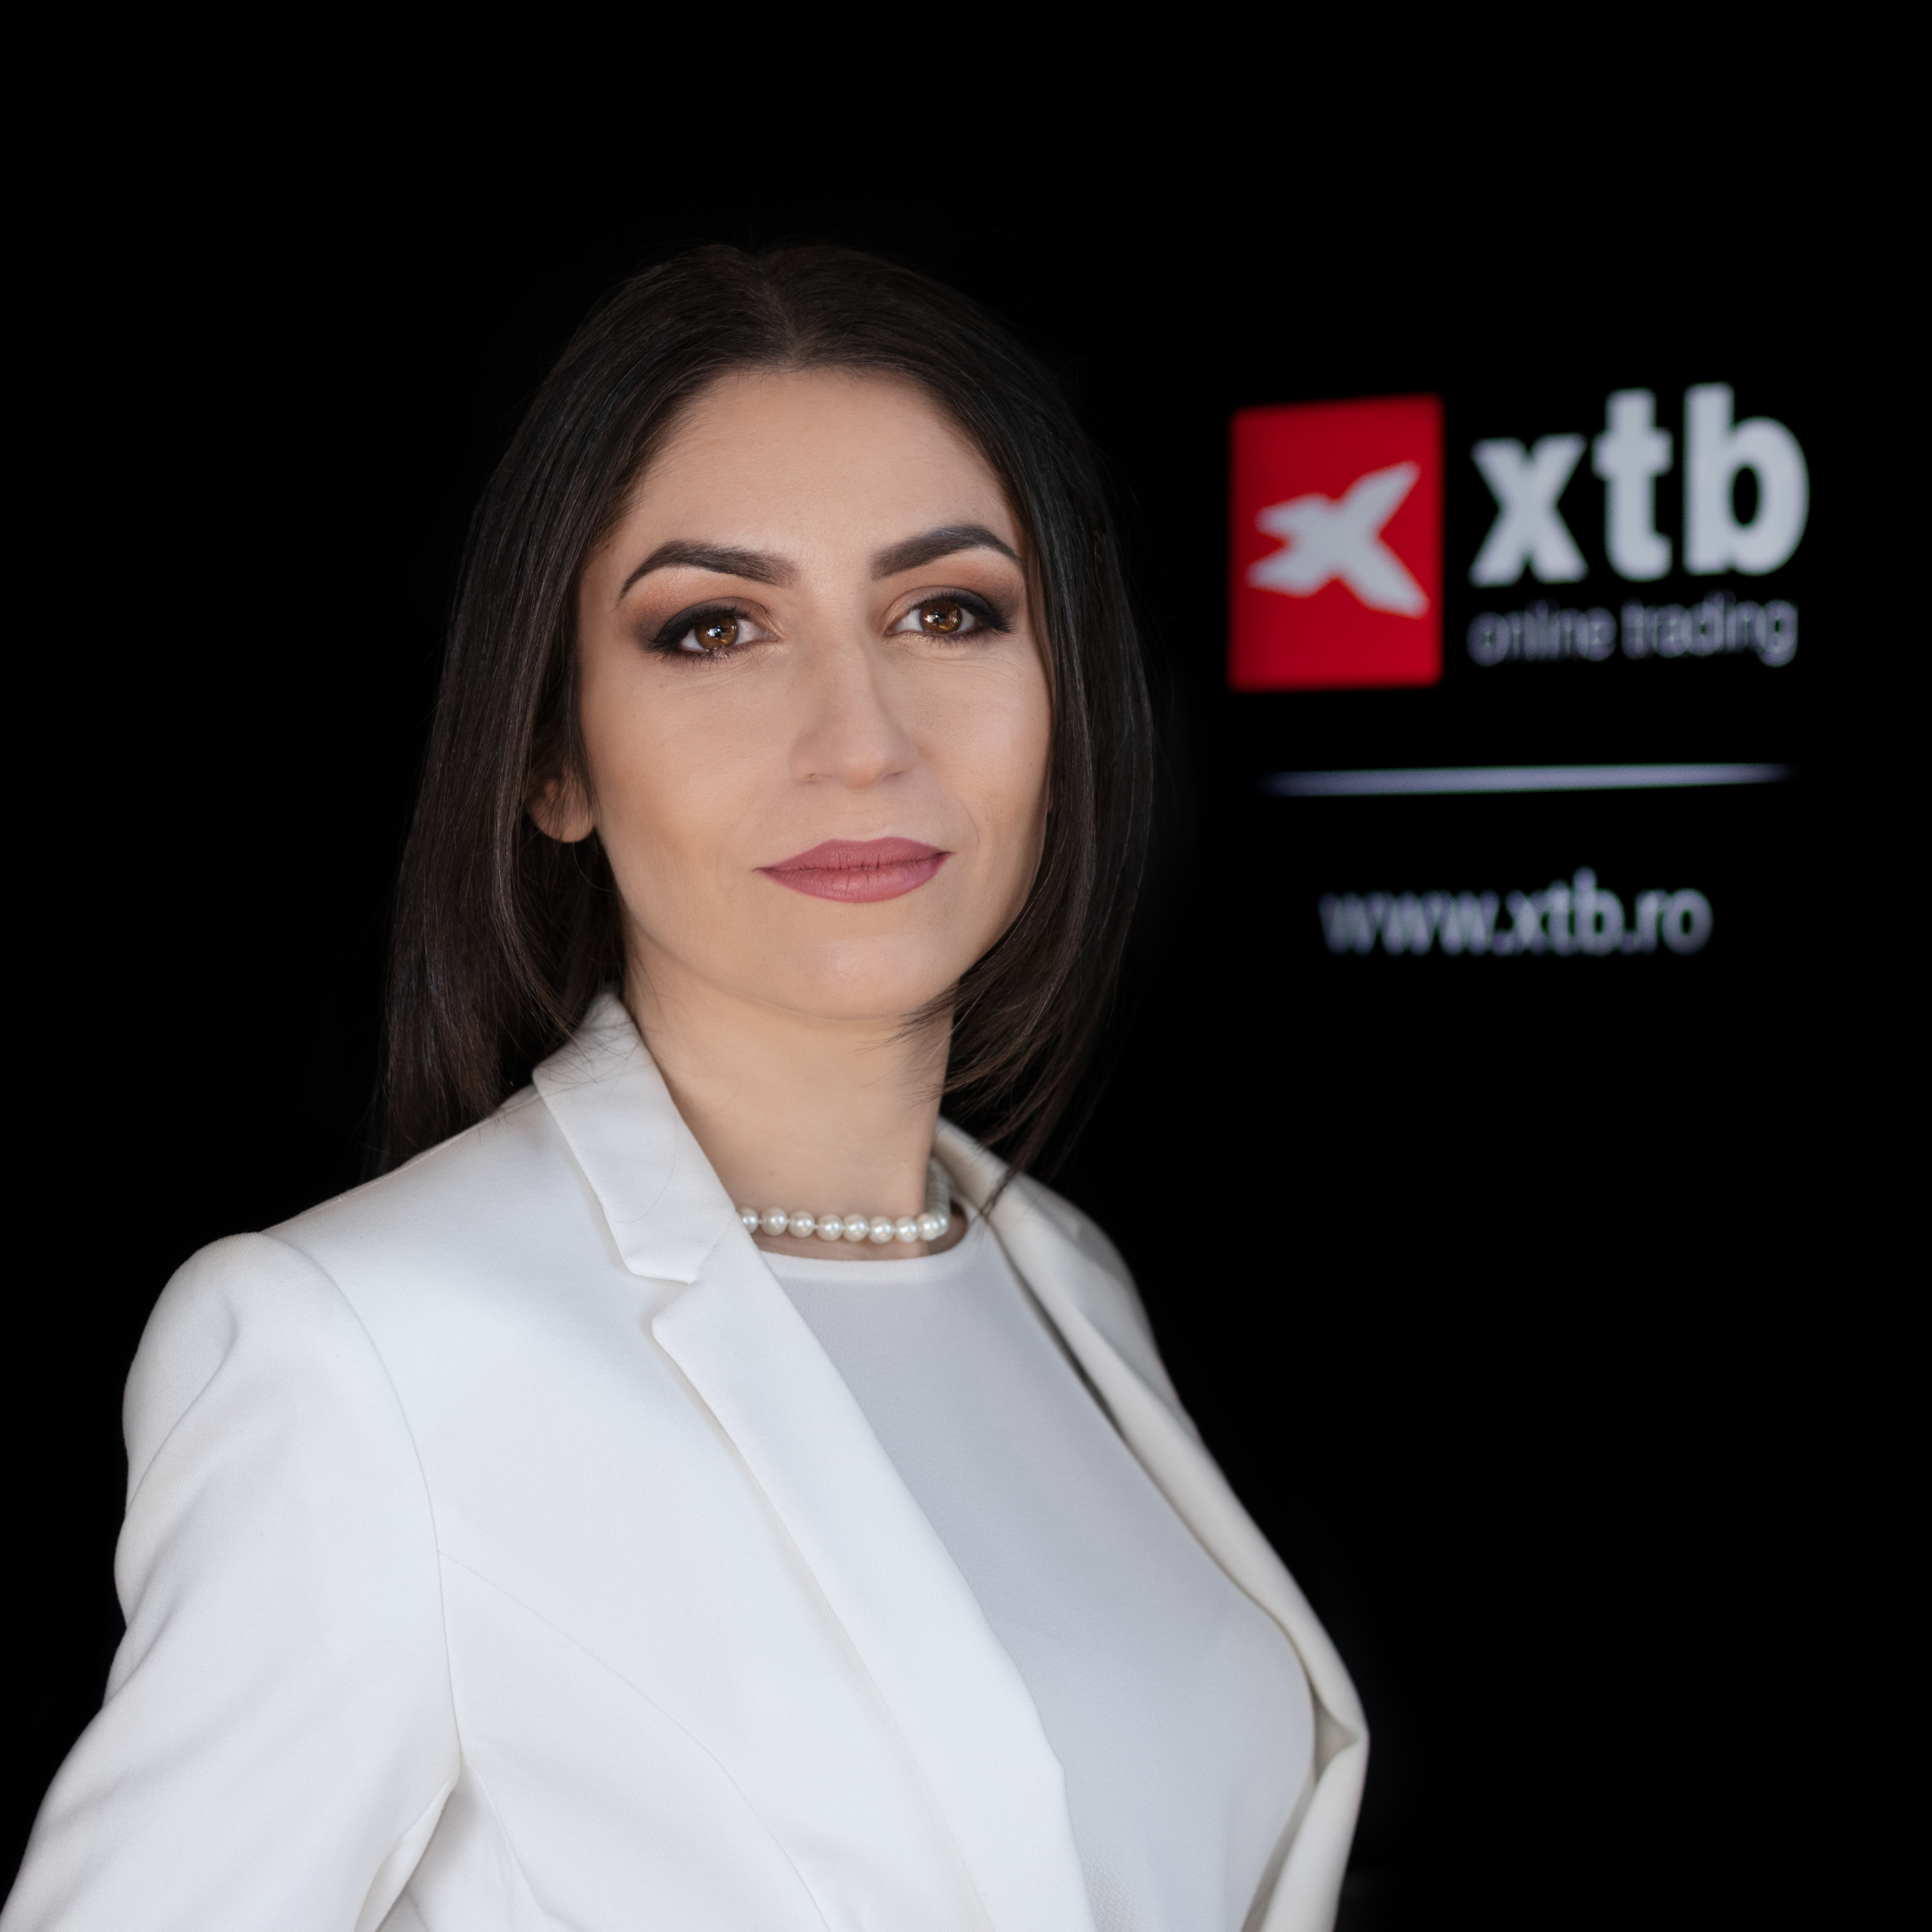 XTB devine brokerul cu una dintre cele mai accesibile game de produse financiare din România după eliminarea comisionului pentru acţiuni şi ETF-uri cu deţinere